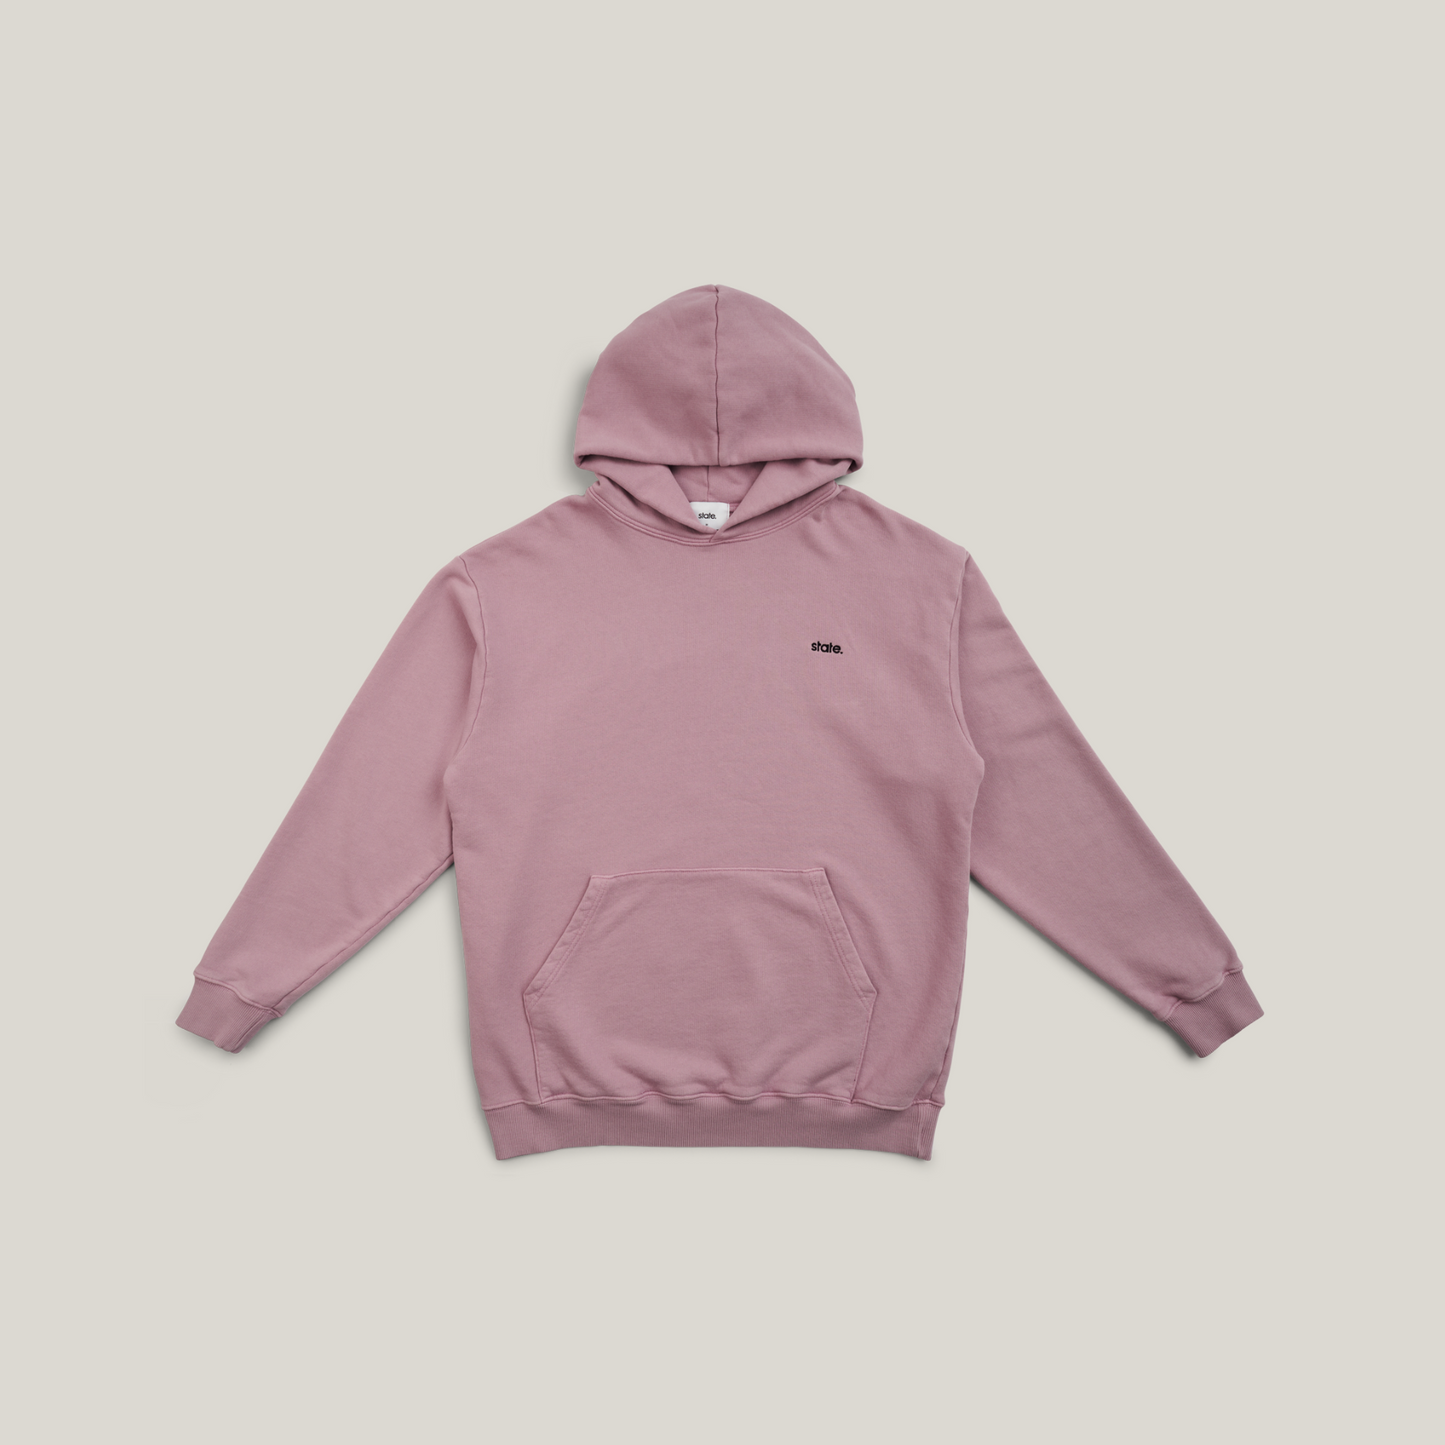 State logo hoodie - Rose pink (washed)